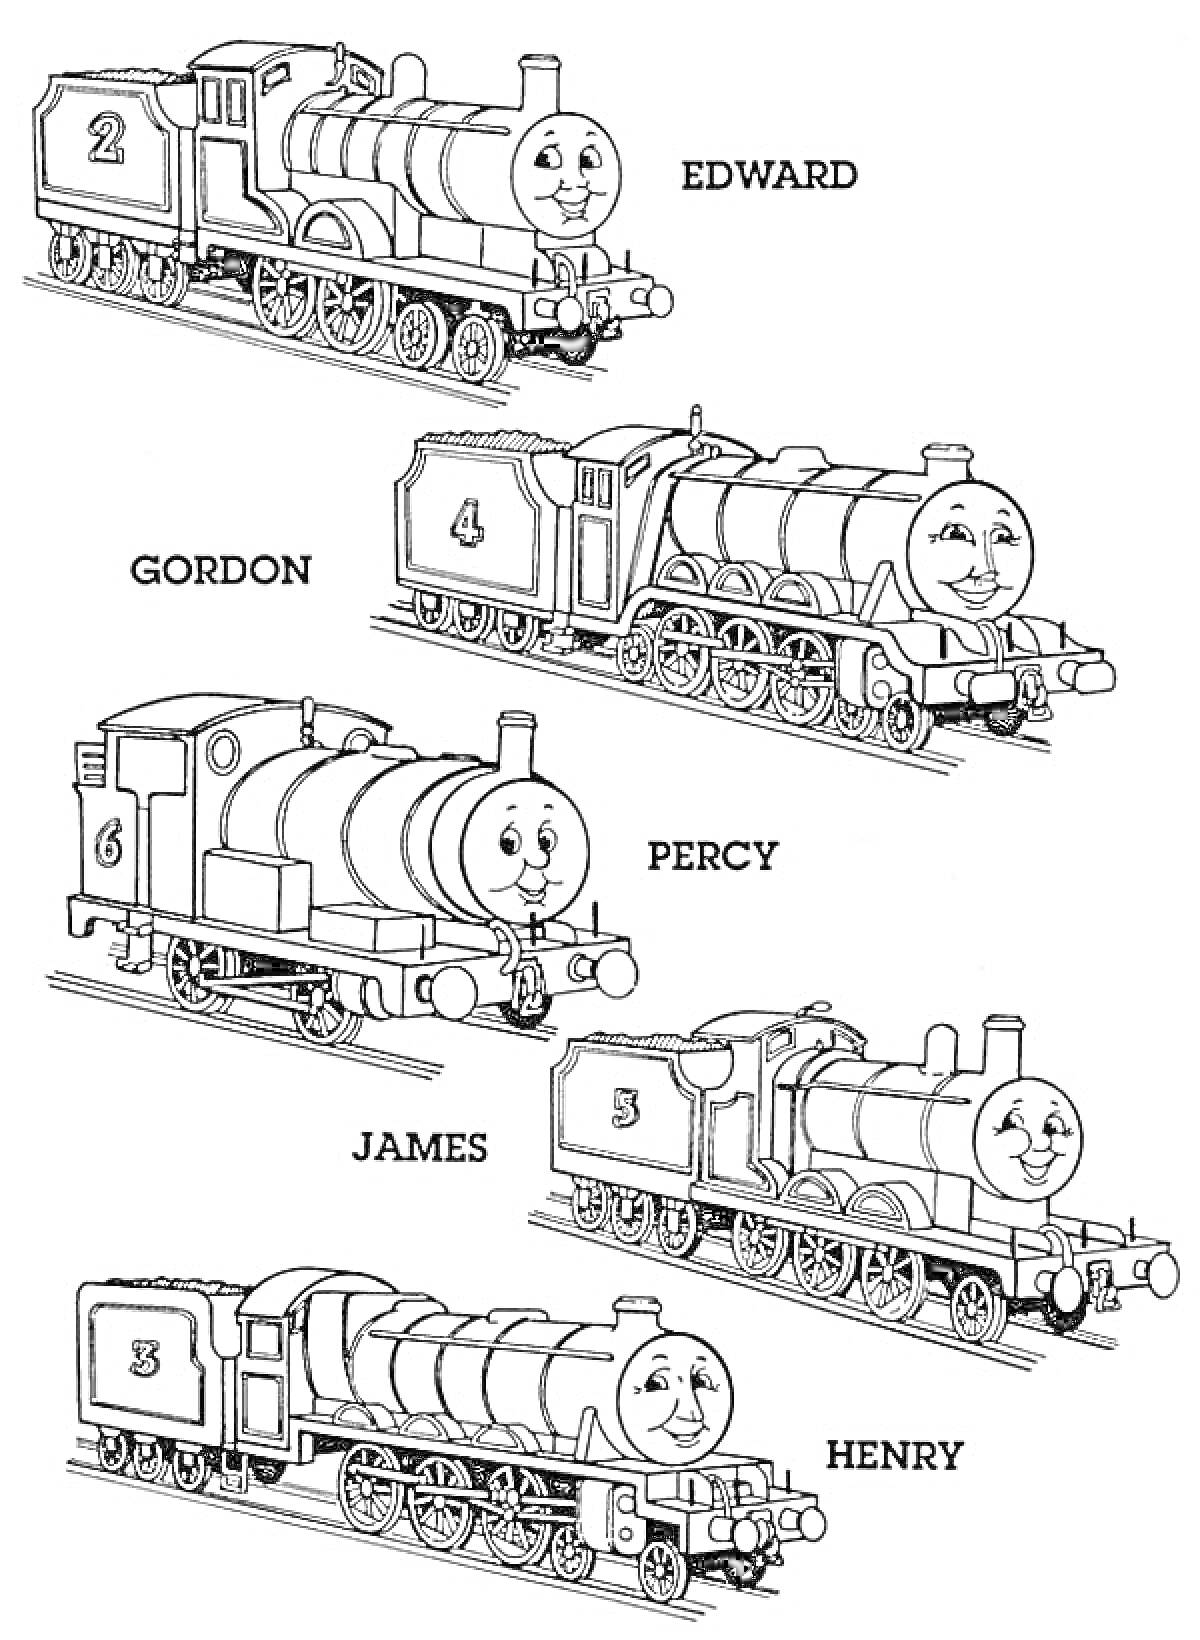 Паровозики со смайликами (Эдвард, Гордон, Перси, Джеймс, Генри), локомотивы с номерами и именами